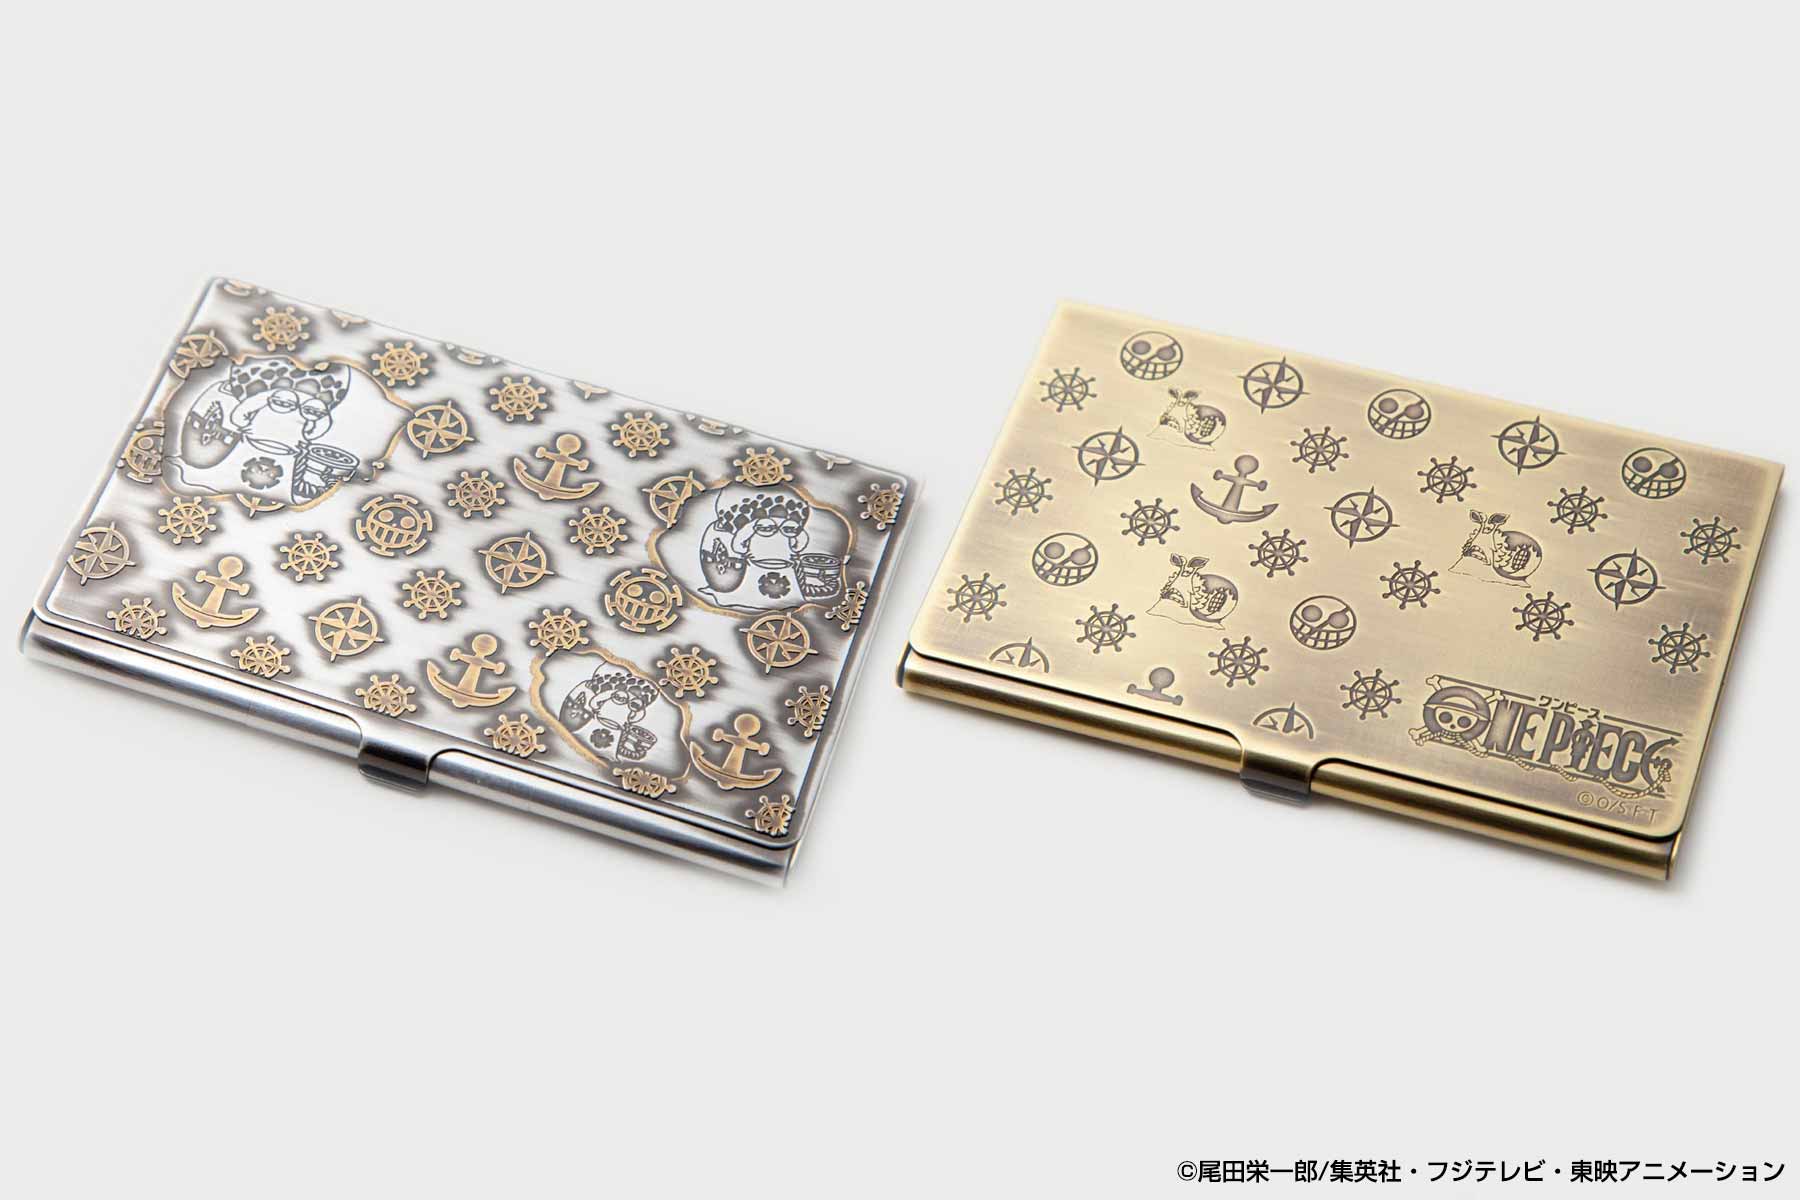 ロー ドフラミンゴ電伝虫デザイン One Piece メタルカードケースが登場 株式会社ヒキダシ